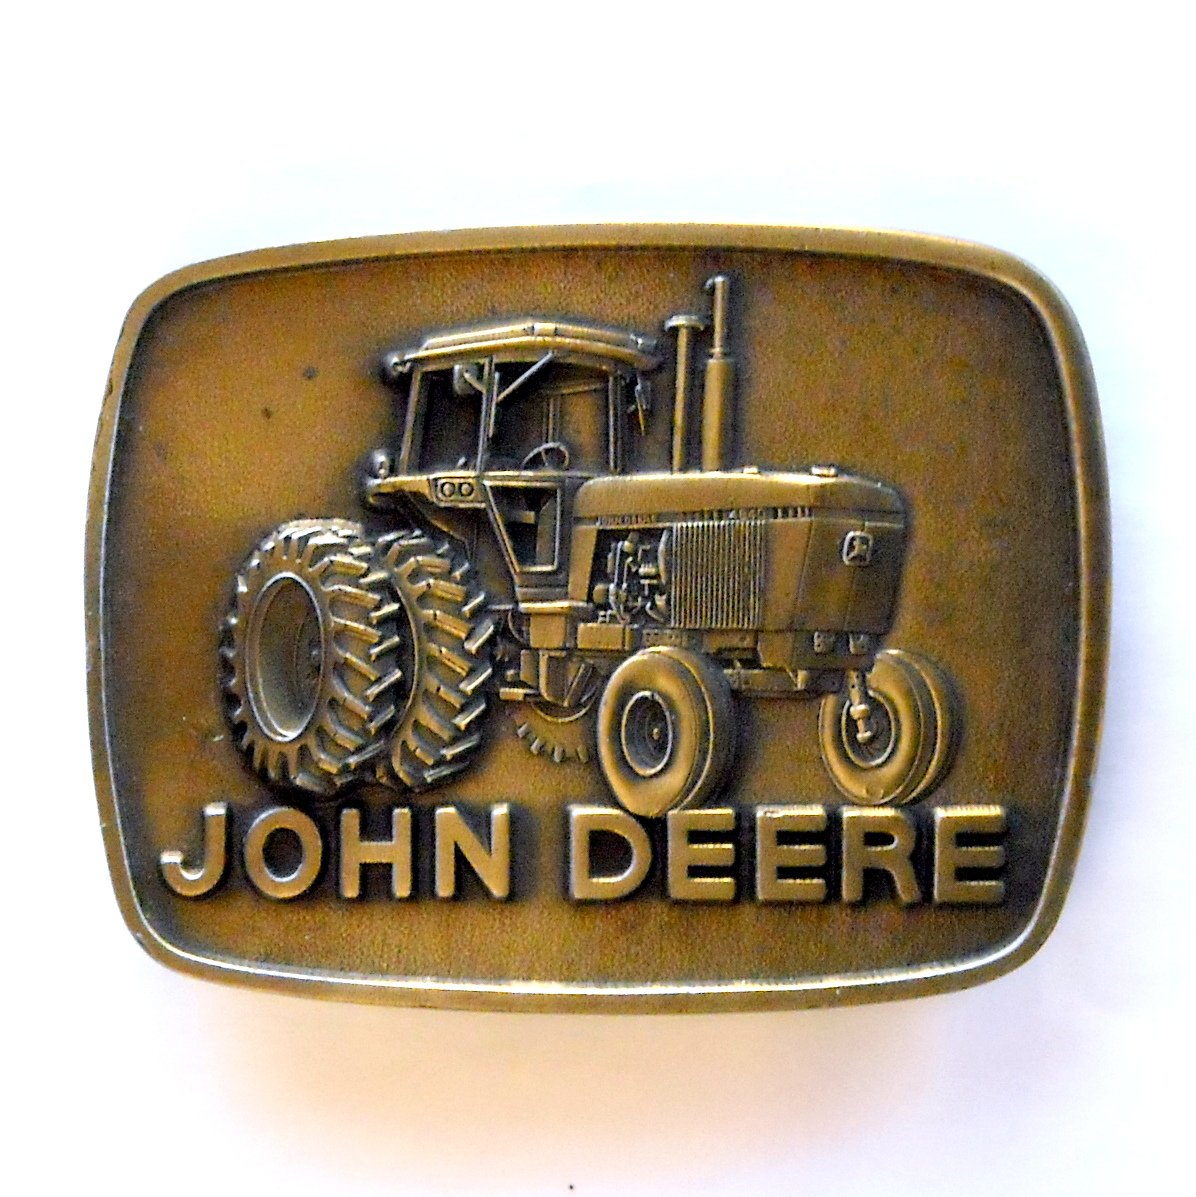 John Deere 1977 Tractor 4840 Vintage brass belt buckle